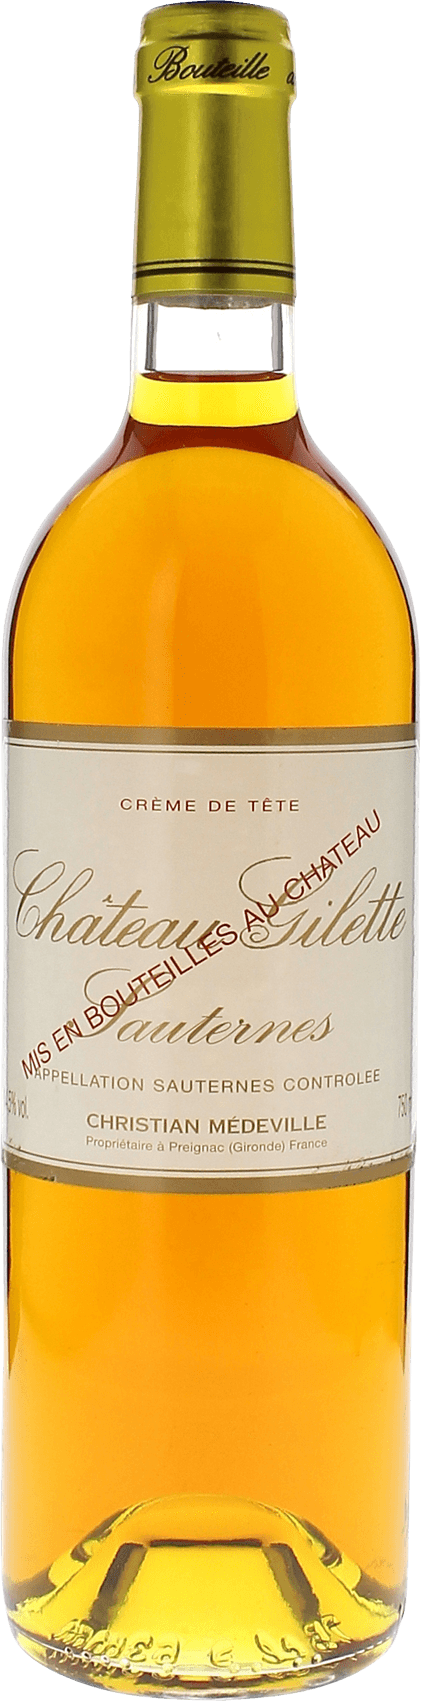 Gilette creme de tte 1950  Sauternes, Bordeaux blanc